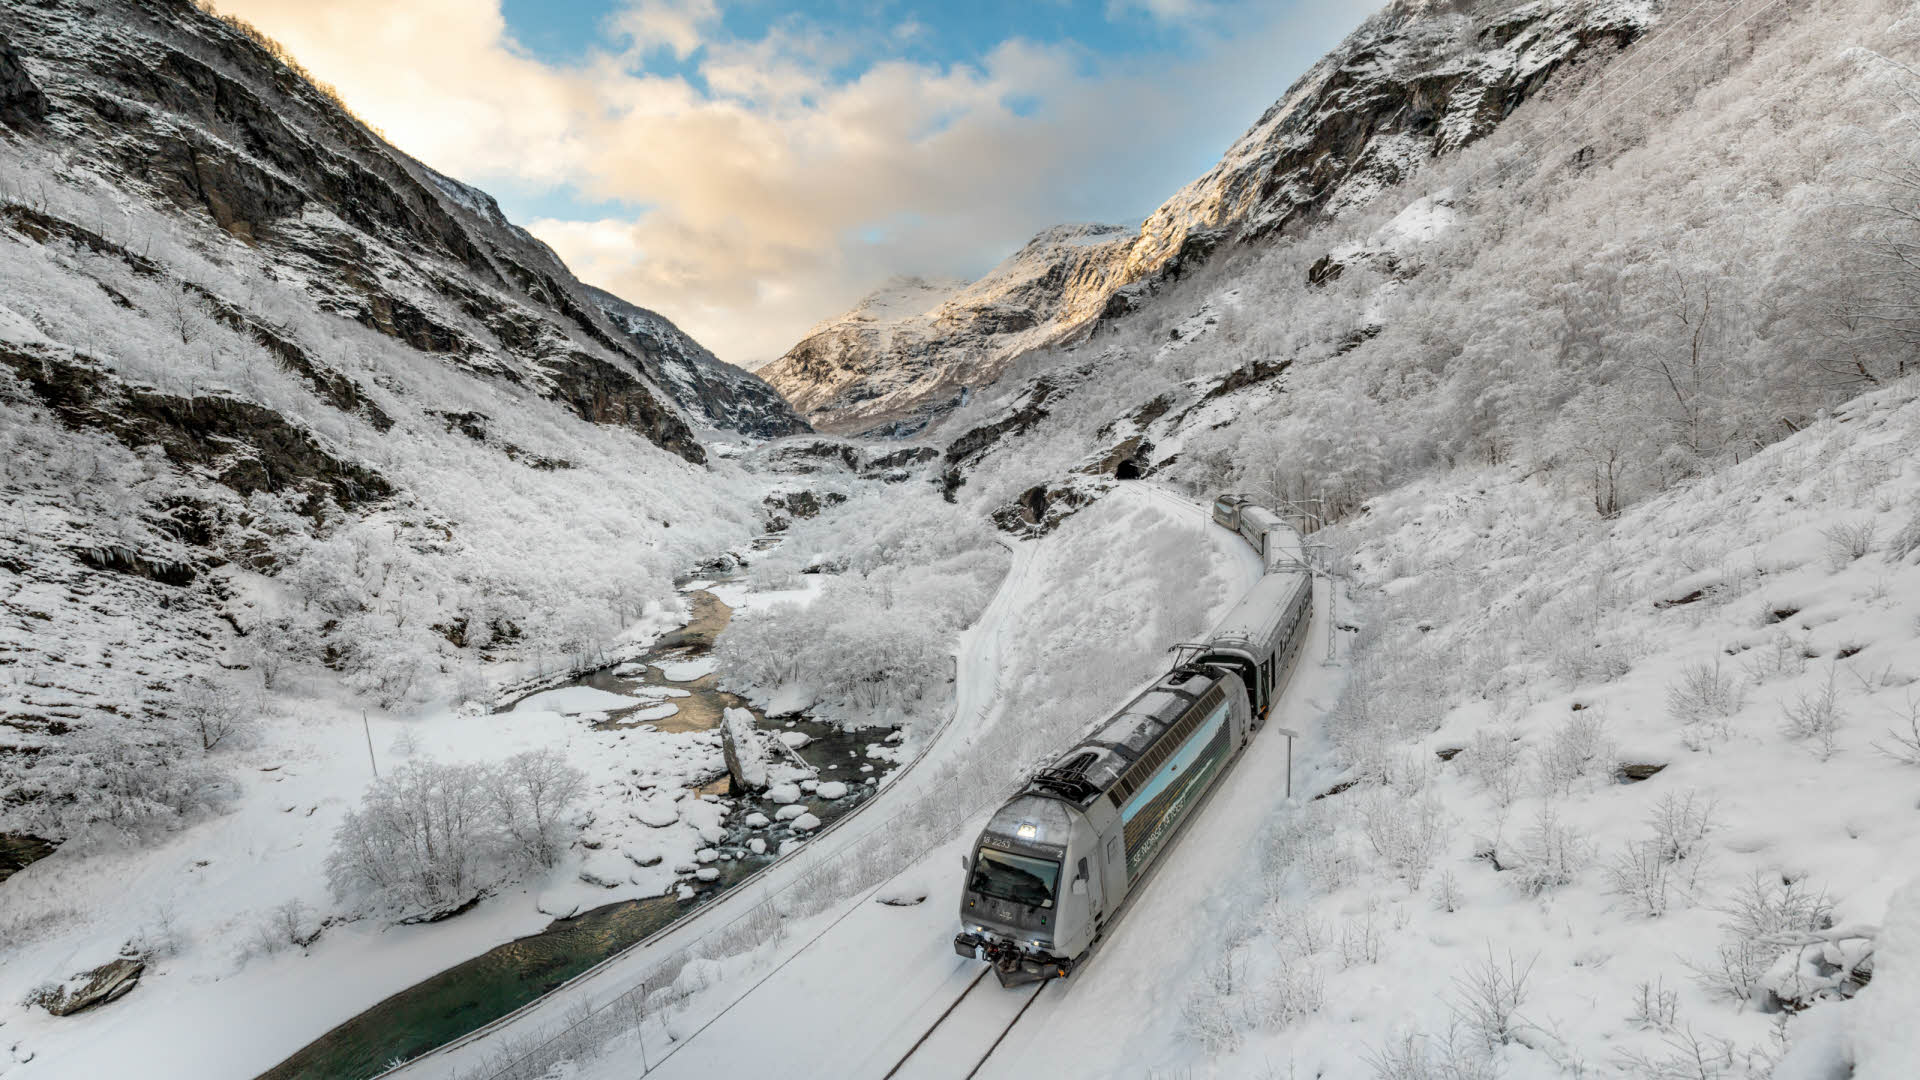 Le train de Flåm descendant dans la vallée de Flåm en hiver, tandis que les rails et les montagnes sont enneigés.